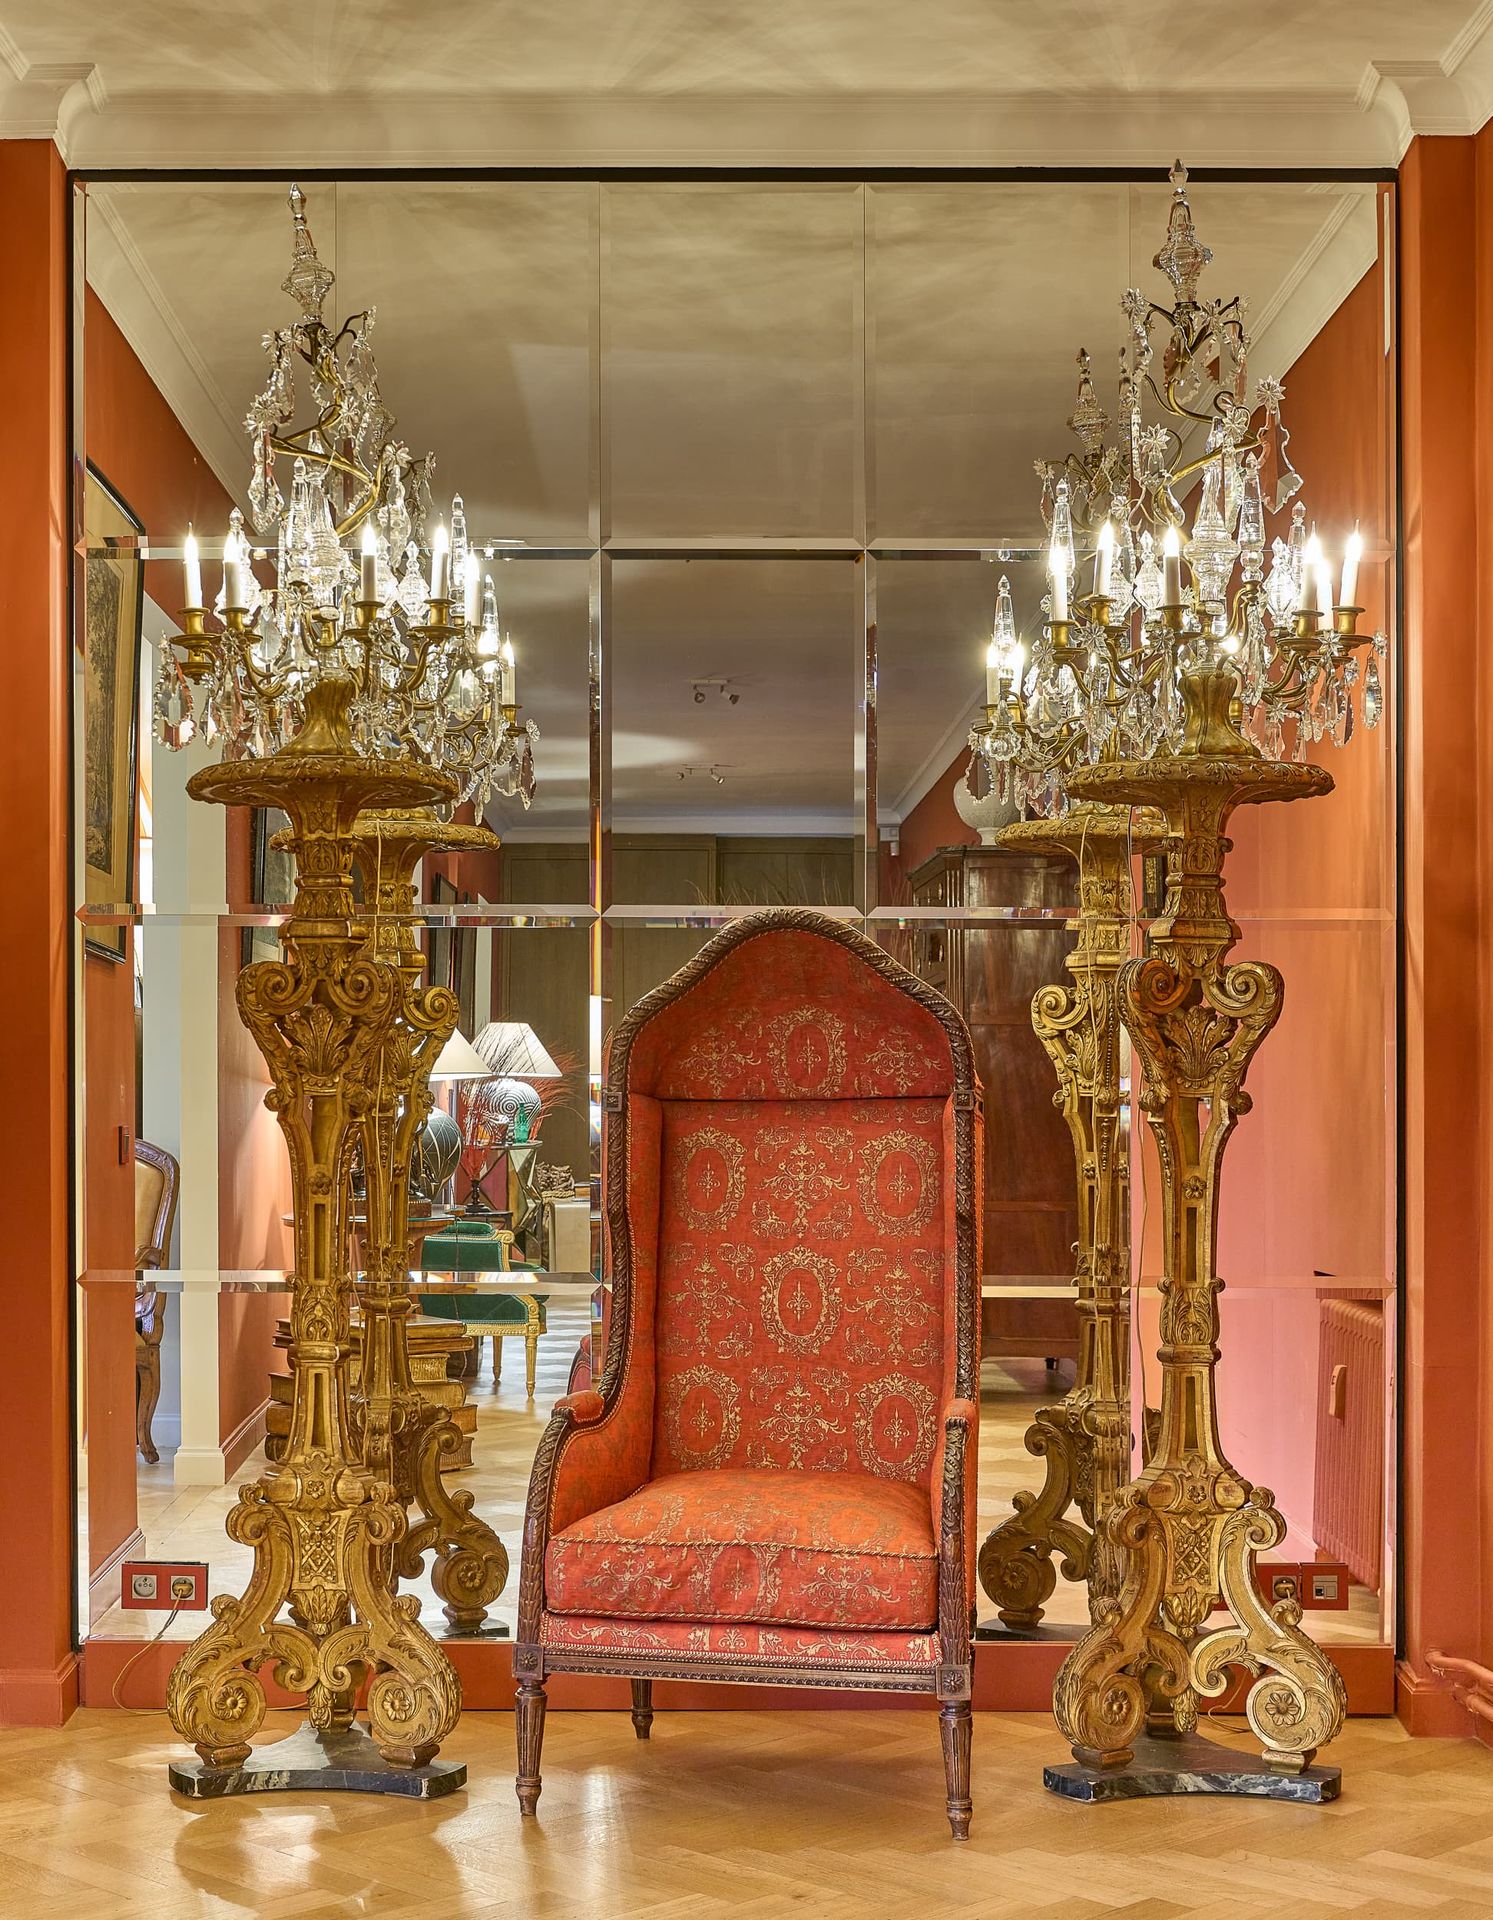 PAIRE DE GRANDES GIRANDOLES Stile Luigi XV, XIX secolo
In metallo dorato e pende&hellip;